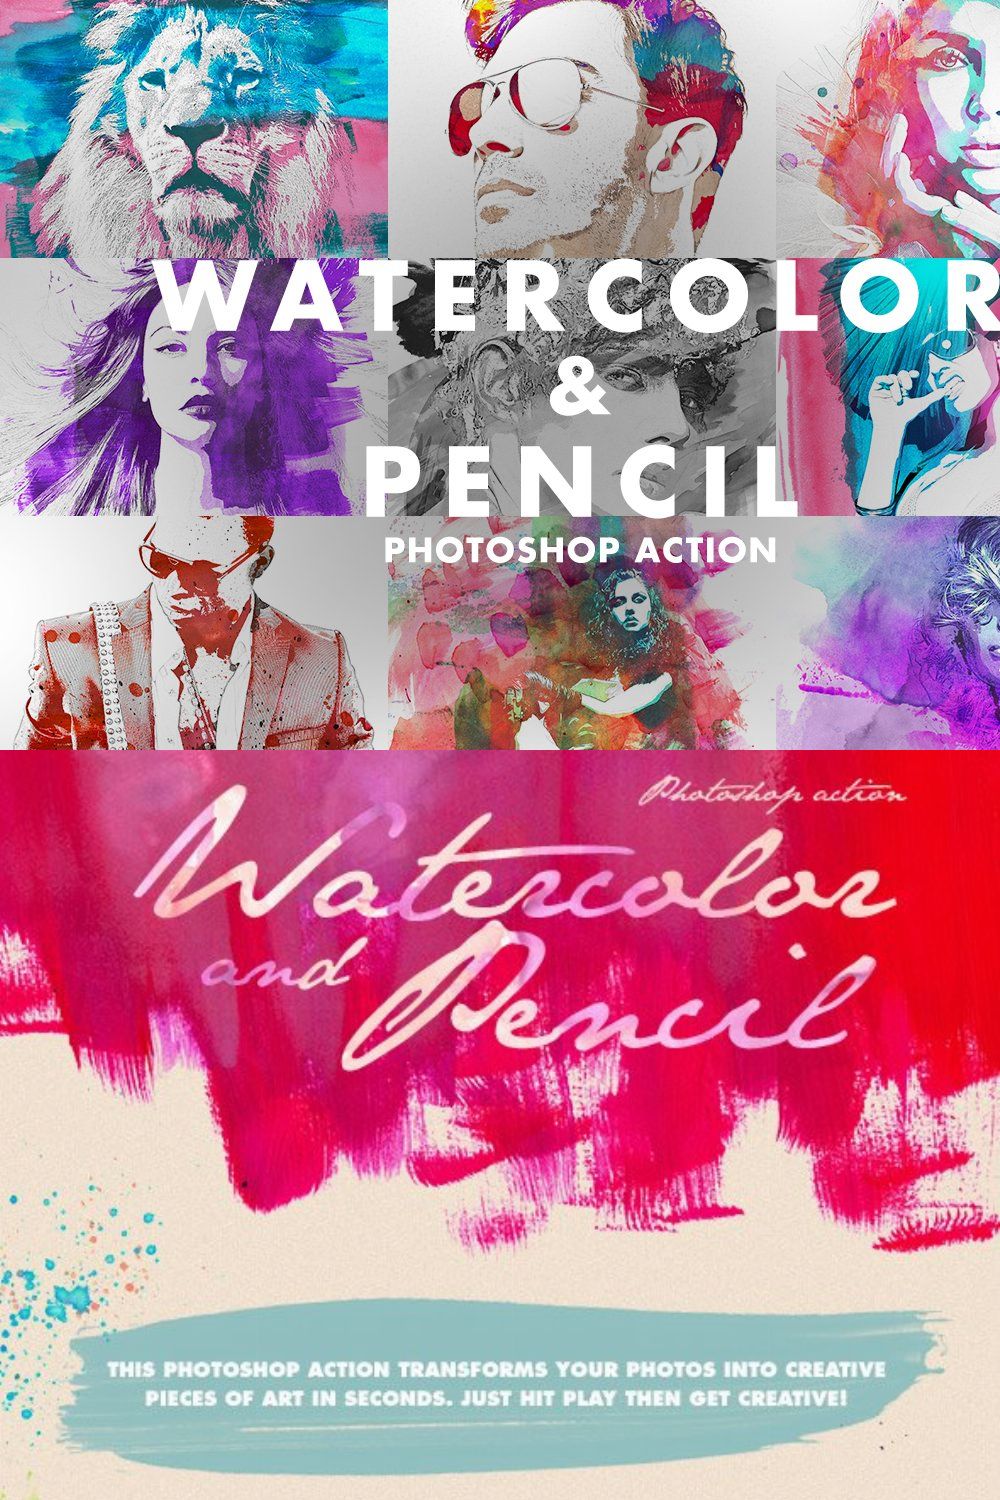 Watercolor & Pencil Photoshop Action pinterest preview image.